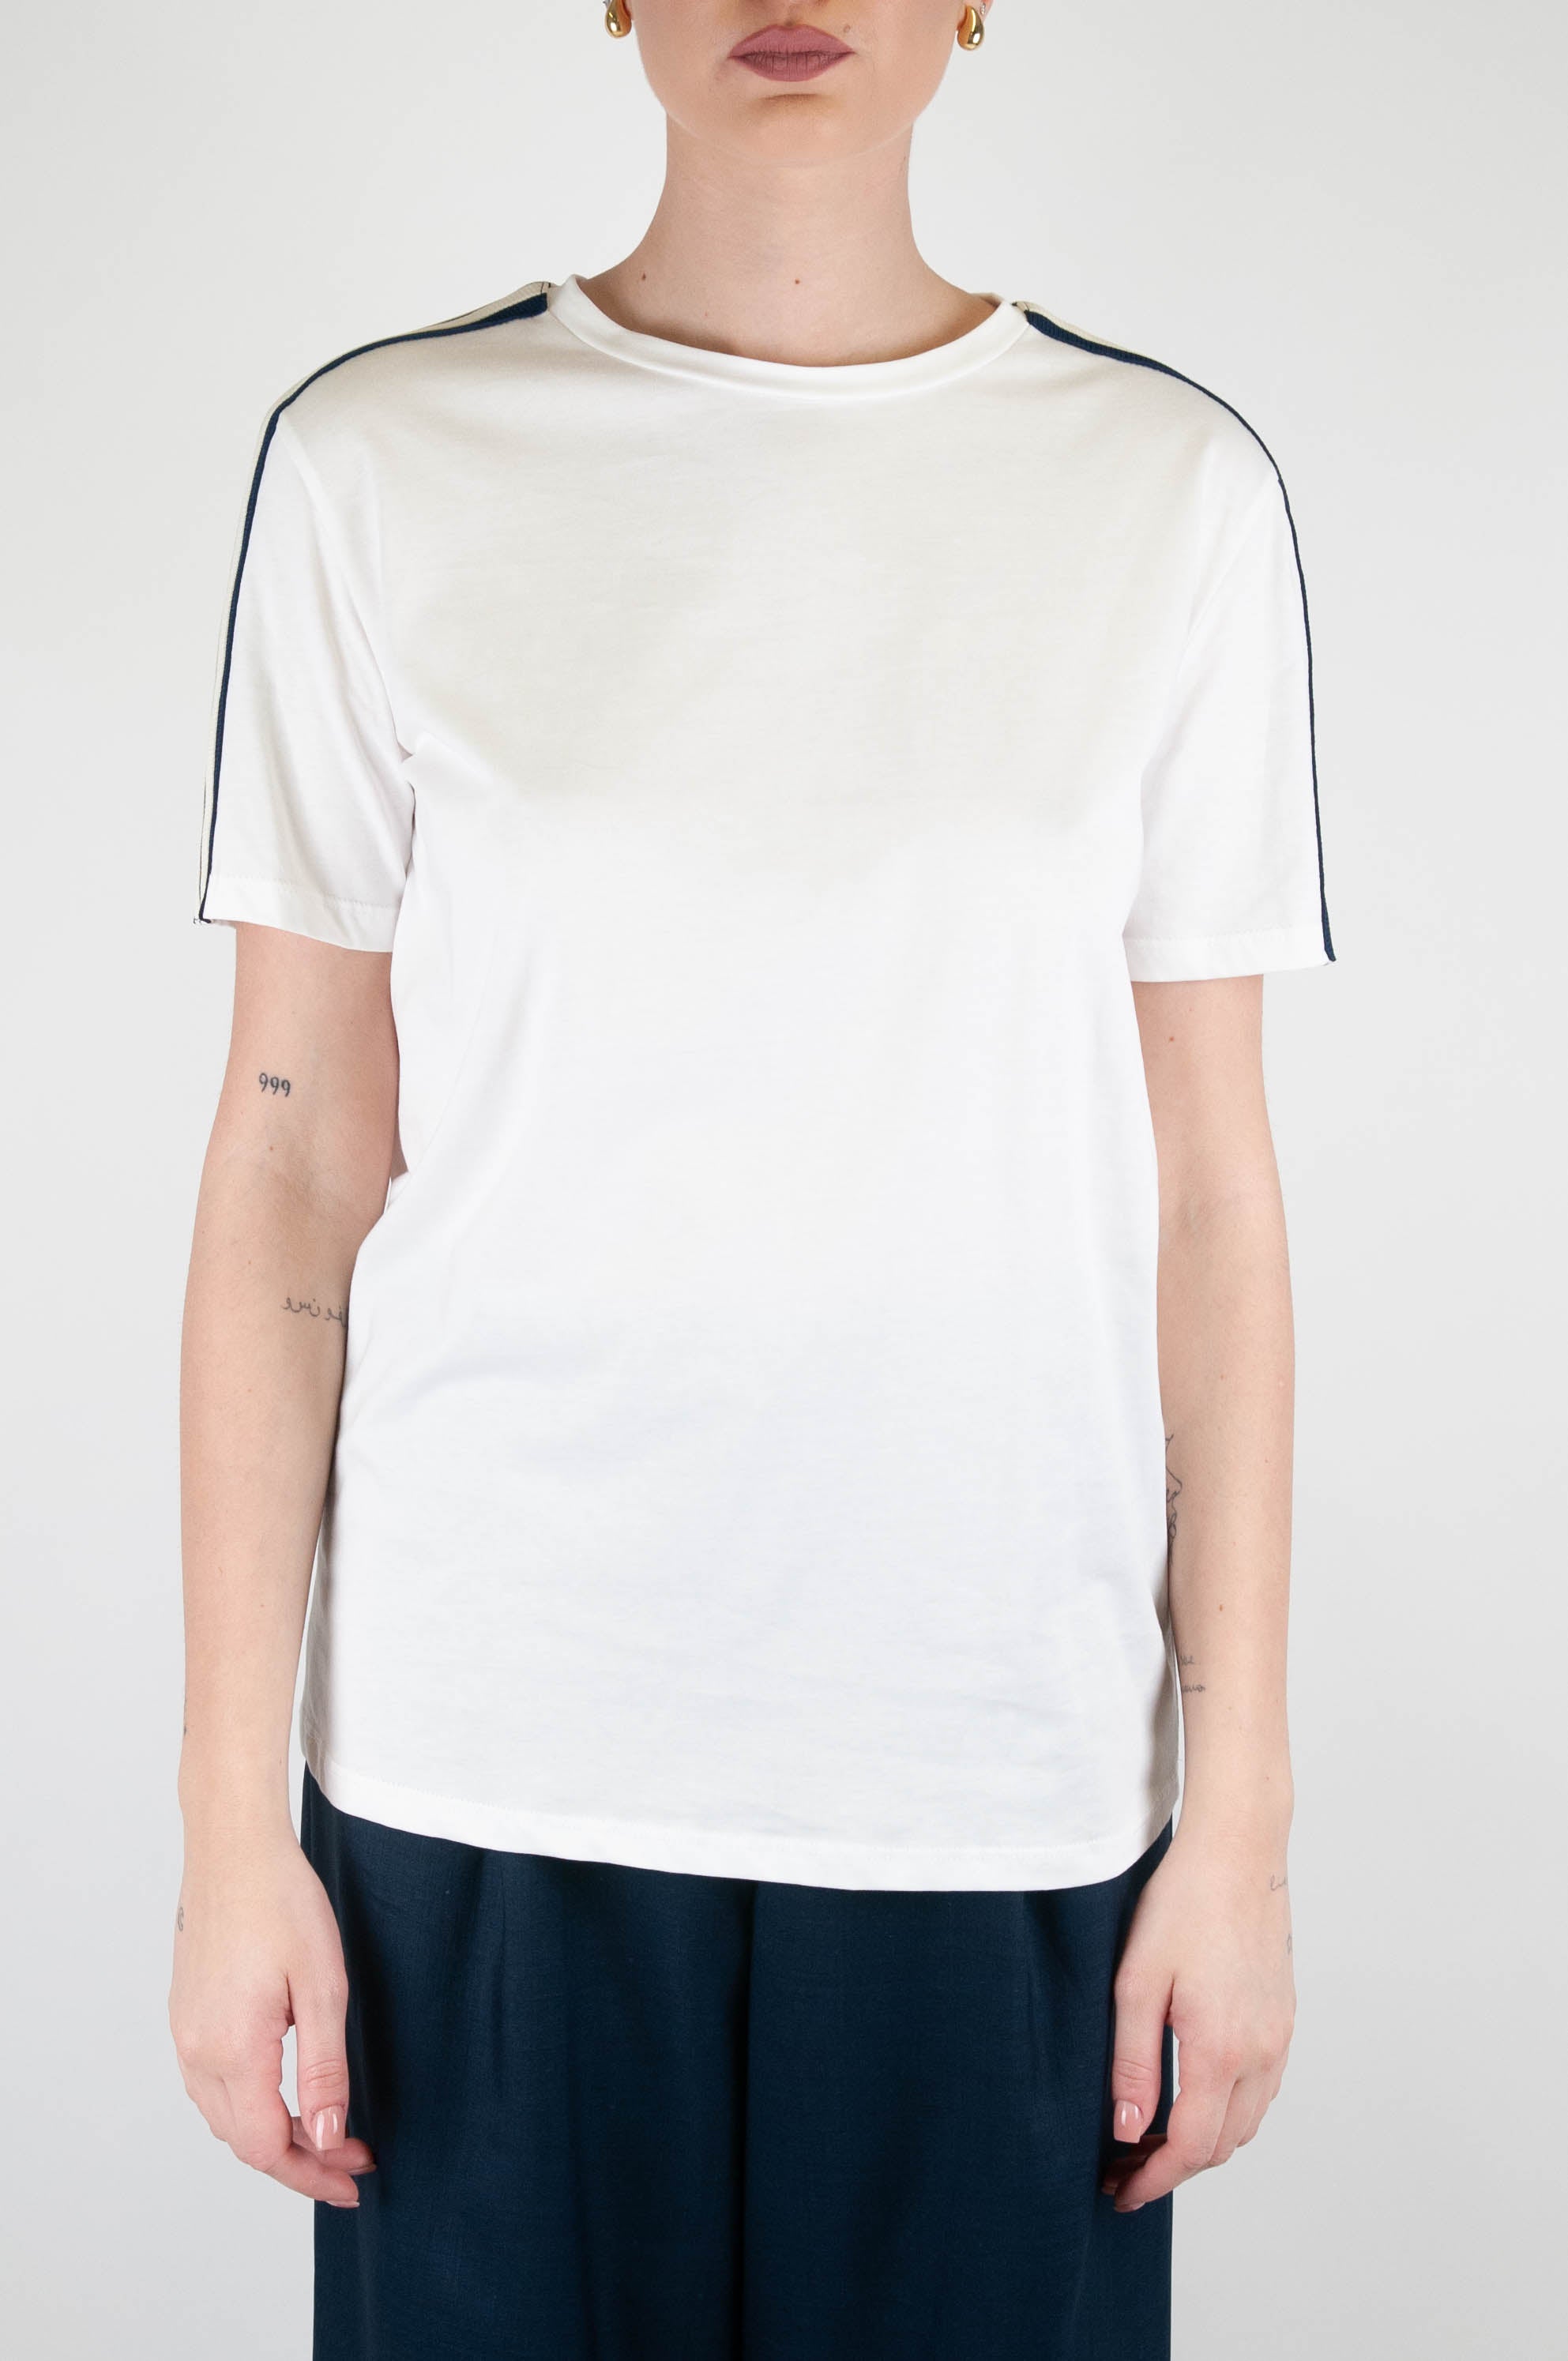 Tensione in - T-shirt in cotone con banda laterale a contrasto